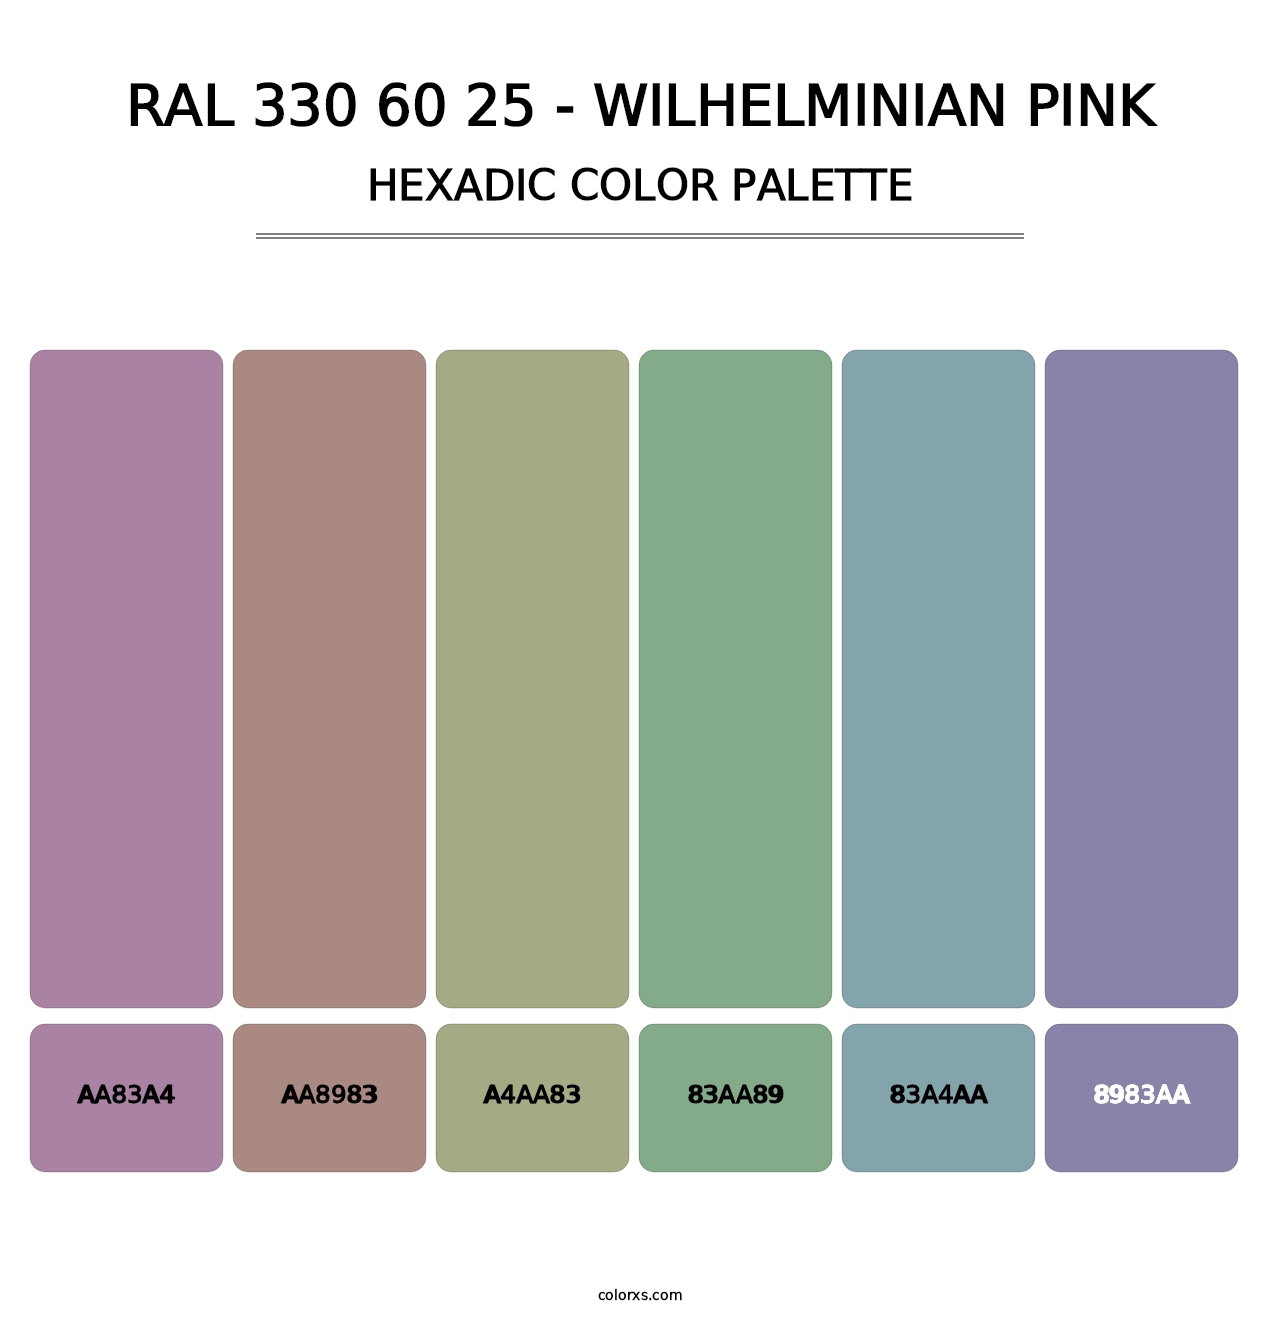 RAL 330 60 25 - Wilhelminian Pink - Hexadic Color Palette